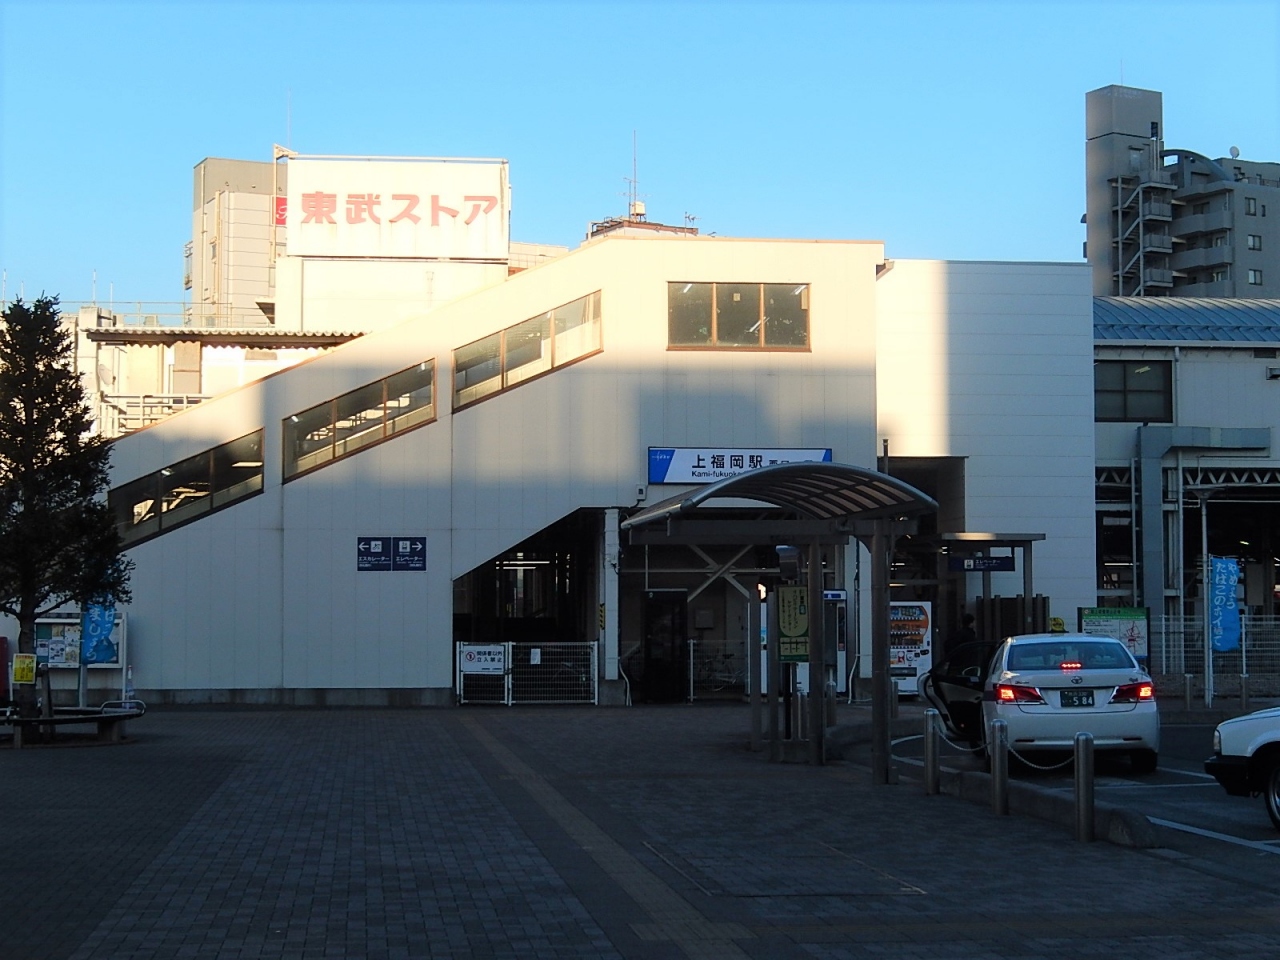 上福岡駅西口ロータリー付近で見られた風景